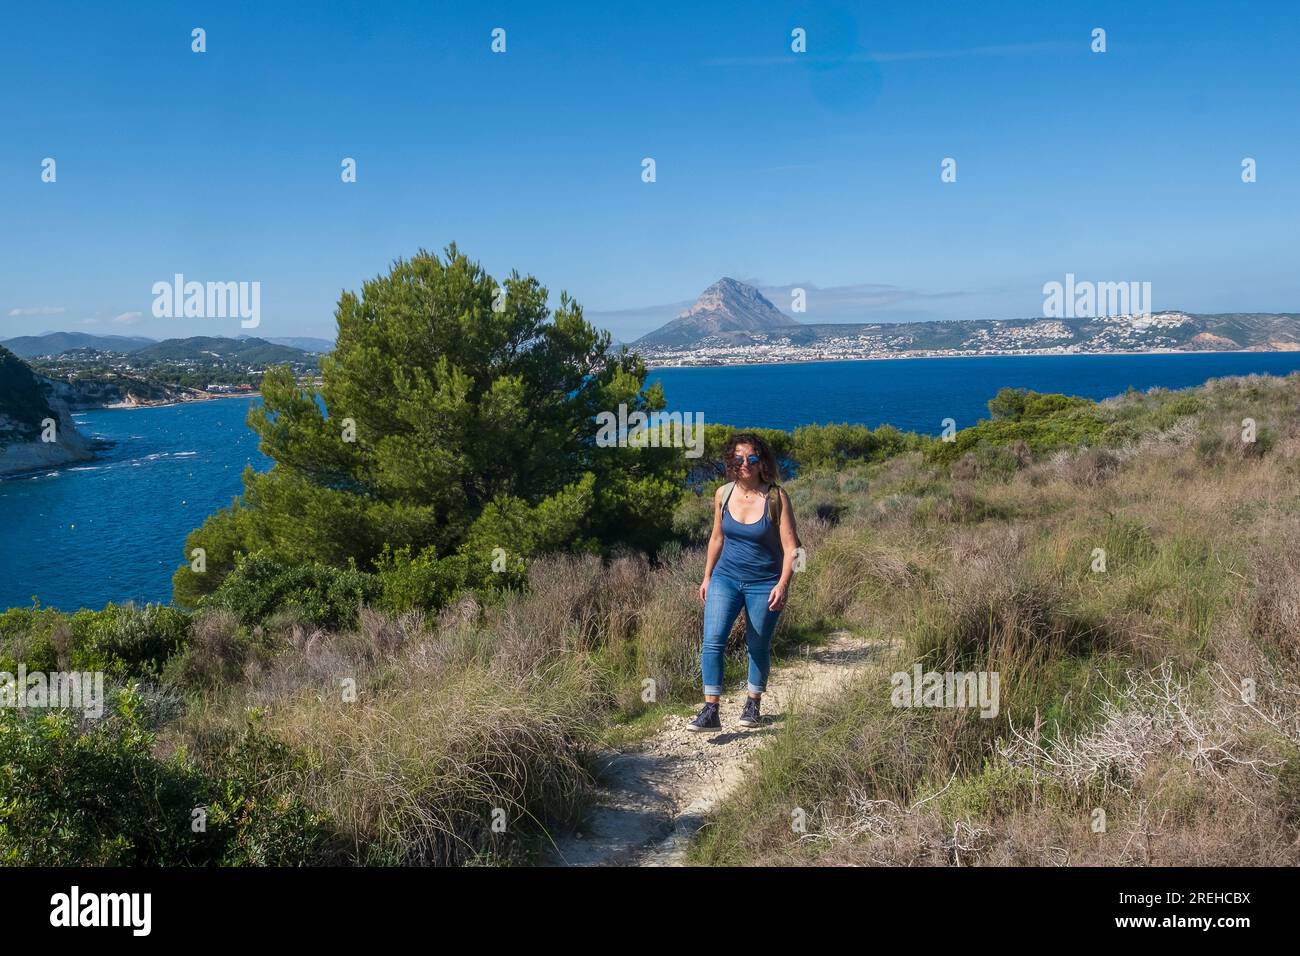 Una donna a Javea (Xabia) a Cap prim e guarda al mare. Foto Stock